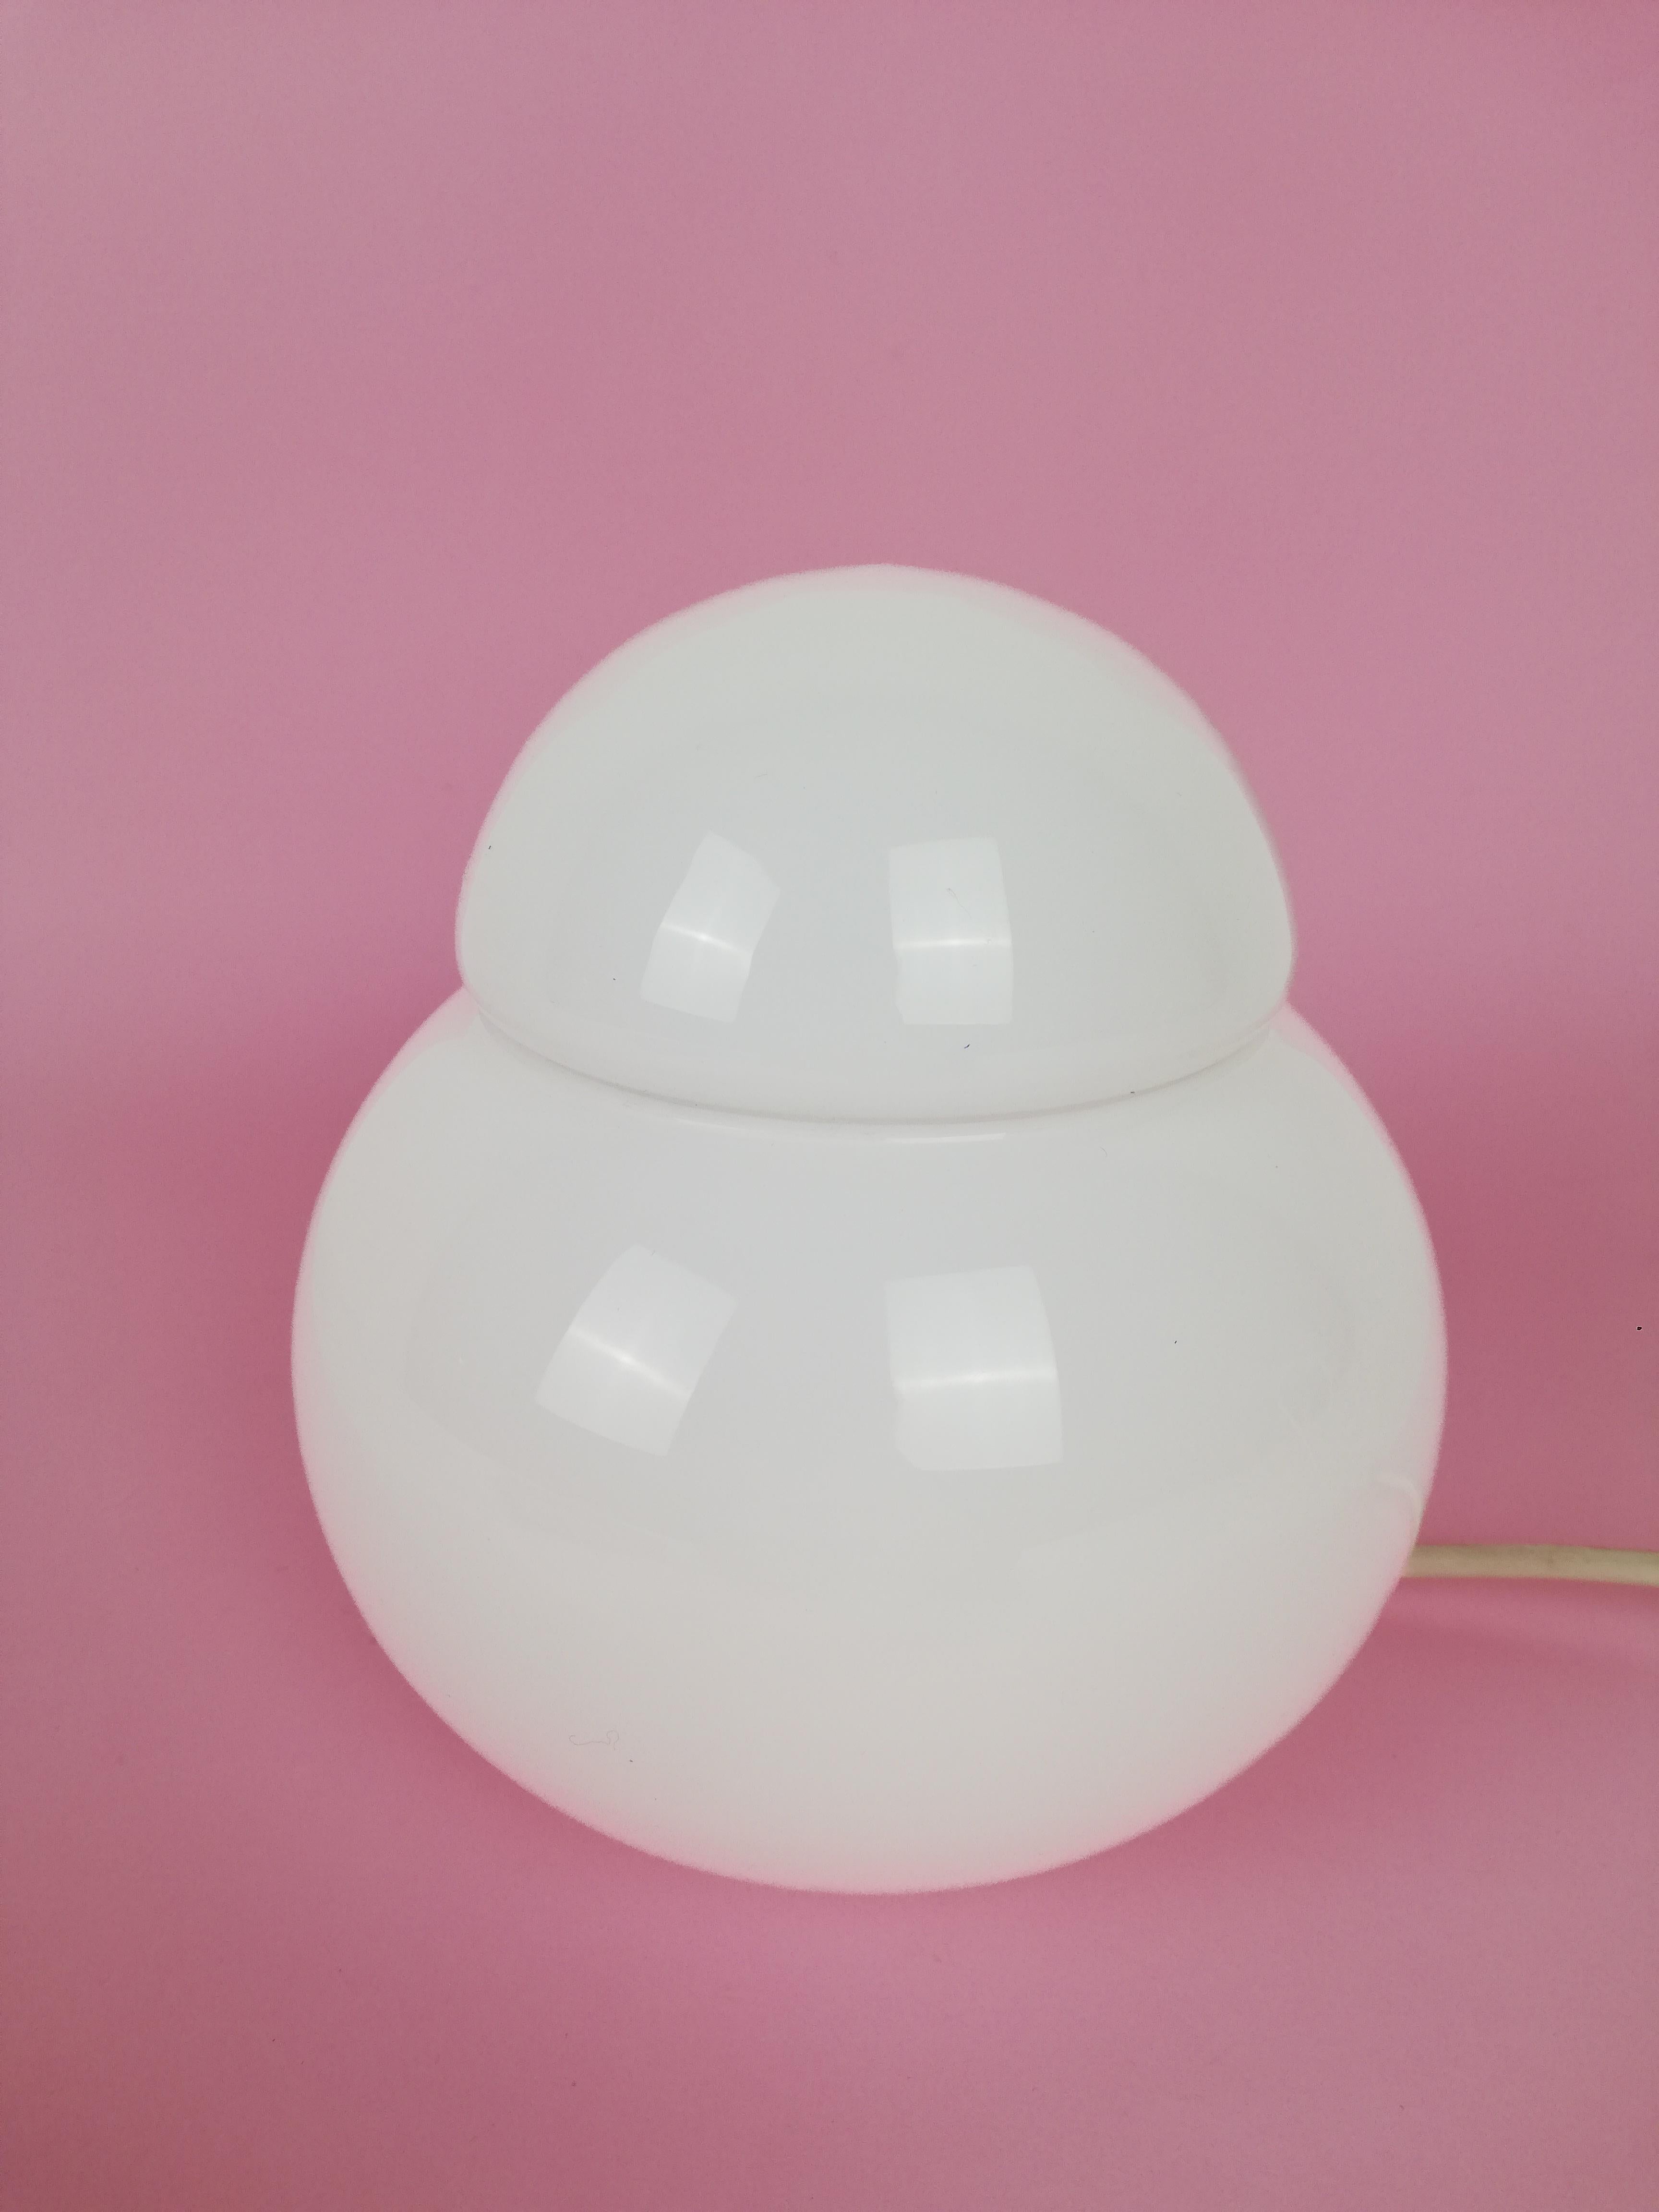 Eine perfekte Nachttischlampe, 1969 von Sergio Asti entworfen und von Candle hergestellt.
Es handelt sich um eine Erstausgabe, die von der Firma Candel und nicht von Fontana Arte hergestellt wurde.
Sie besteht aus 2 Halbkugeln aus Opalglas und ist